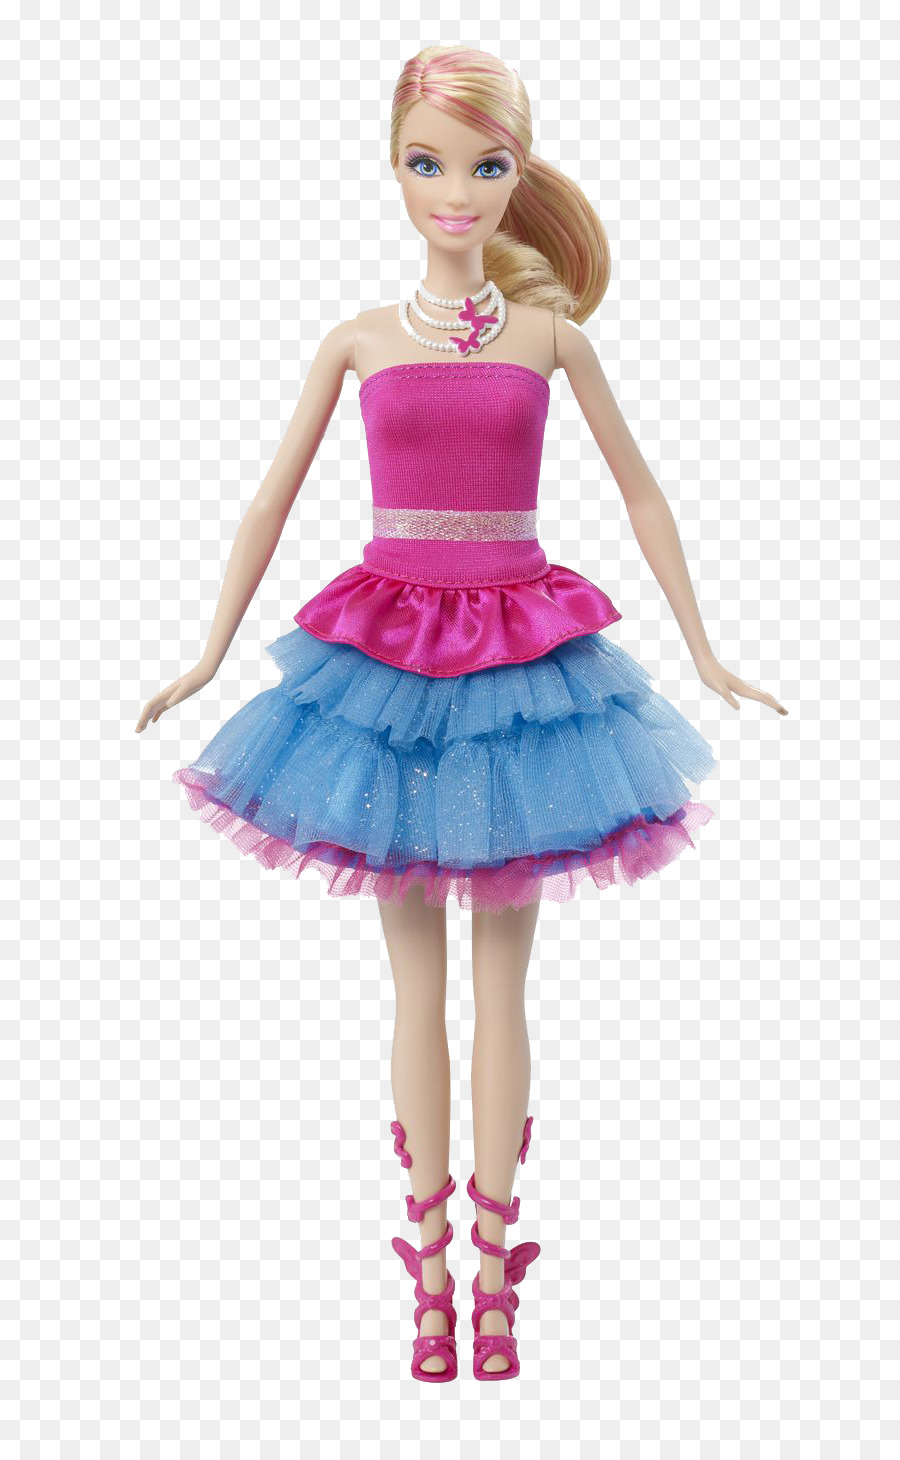 Barbie: A Fairy Secret Ken Raquelle Doll - Barbie Doll PNG Transparent Images png download - 736*1446 - Free Transparent Barbie A Fairy Secret png Download.